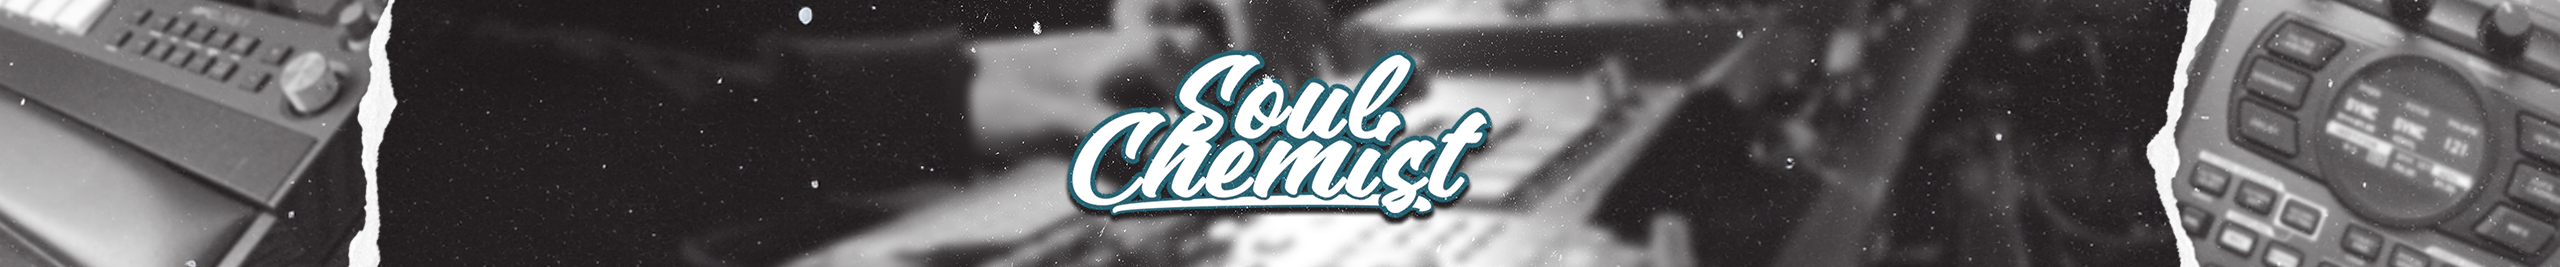 Banner de perfil de Soul Chemist